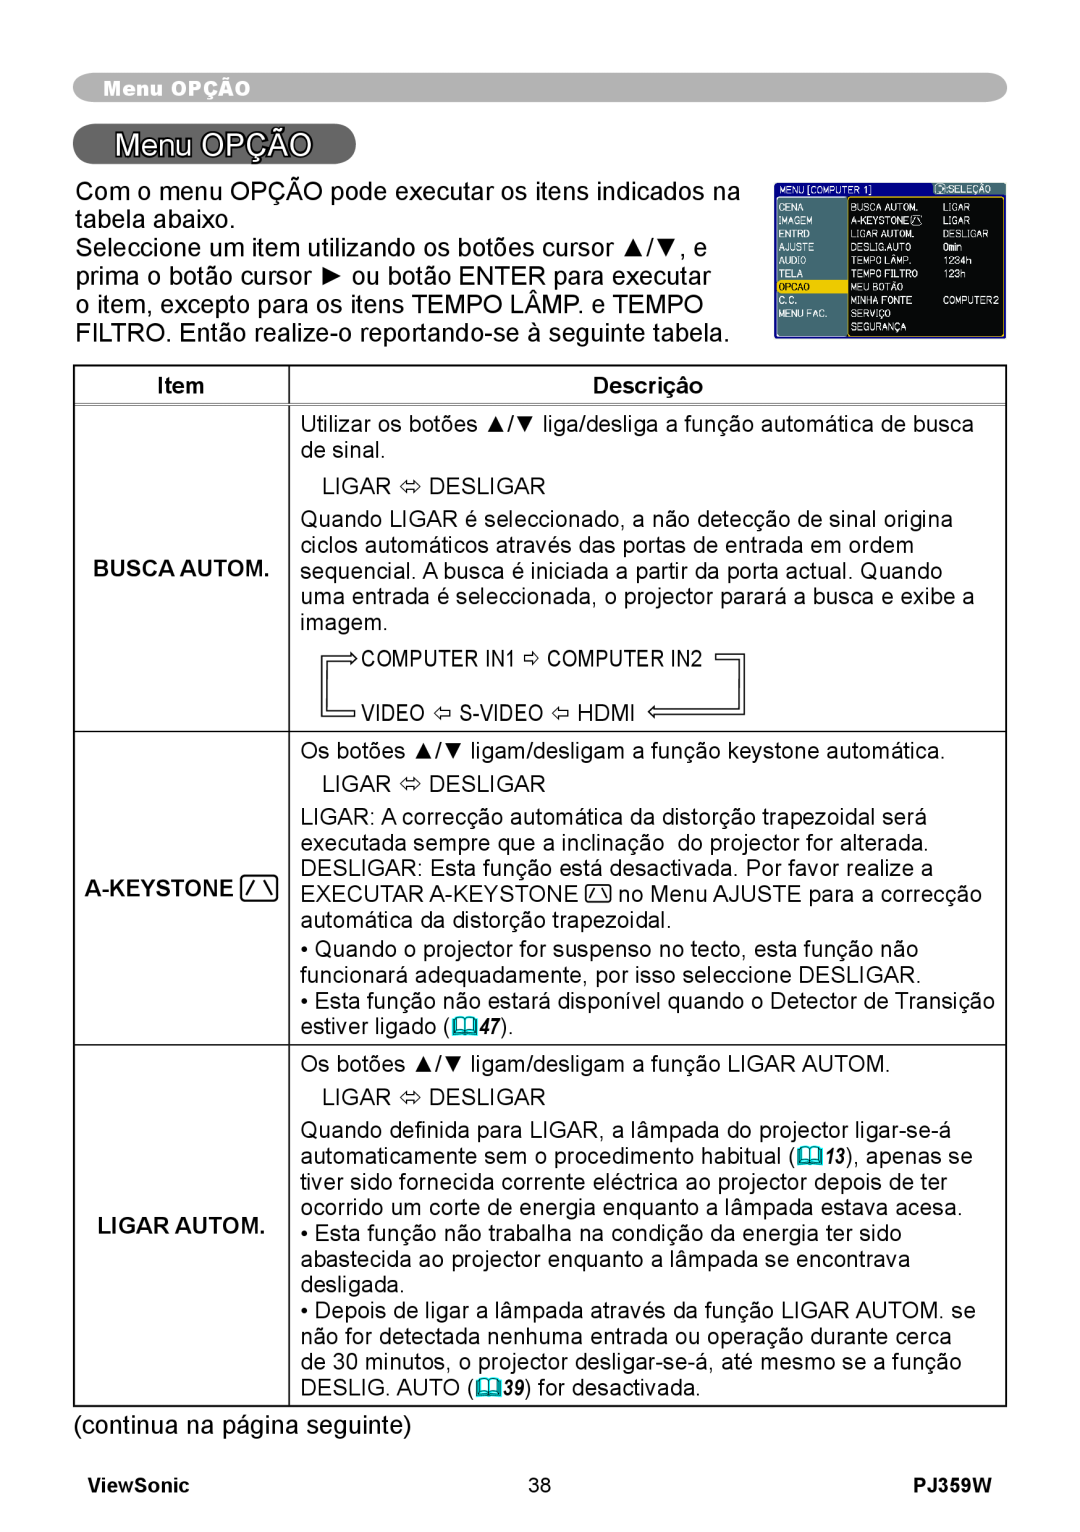 ViewSonic PJ359 manual Menu OPÇÃO, Descriçâo, Busca Autom, A-Keystone, Ligar Autom 